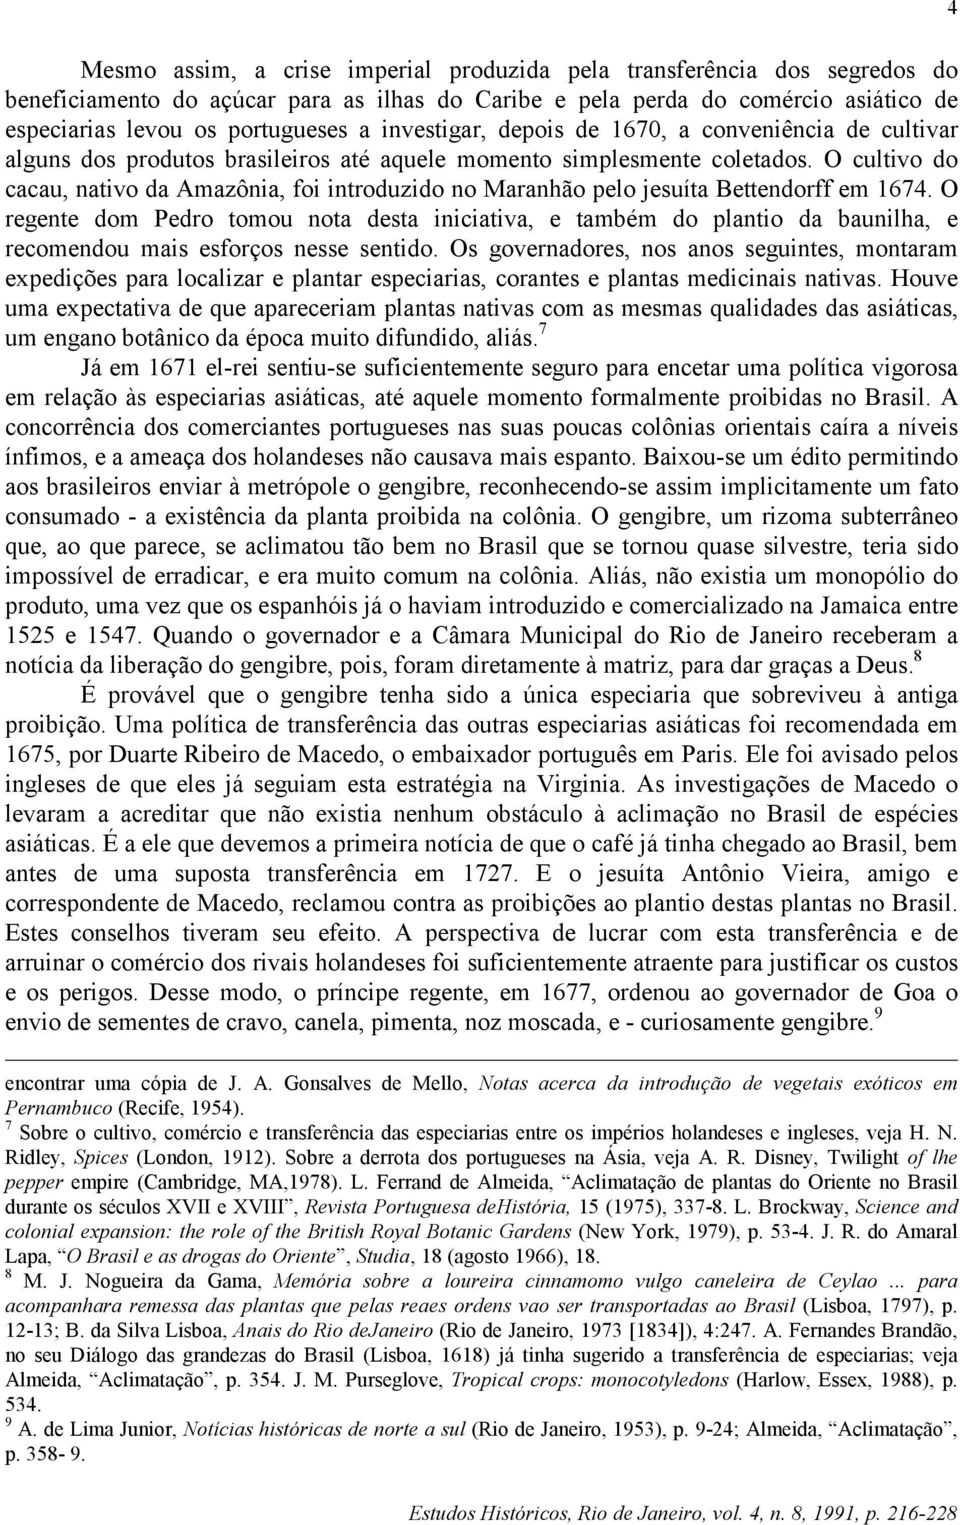 O cultivo do cacau, nativo da Amazônia, foi introduzido no Maranhão pelo jesuíta Bettendorff em 1674.